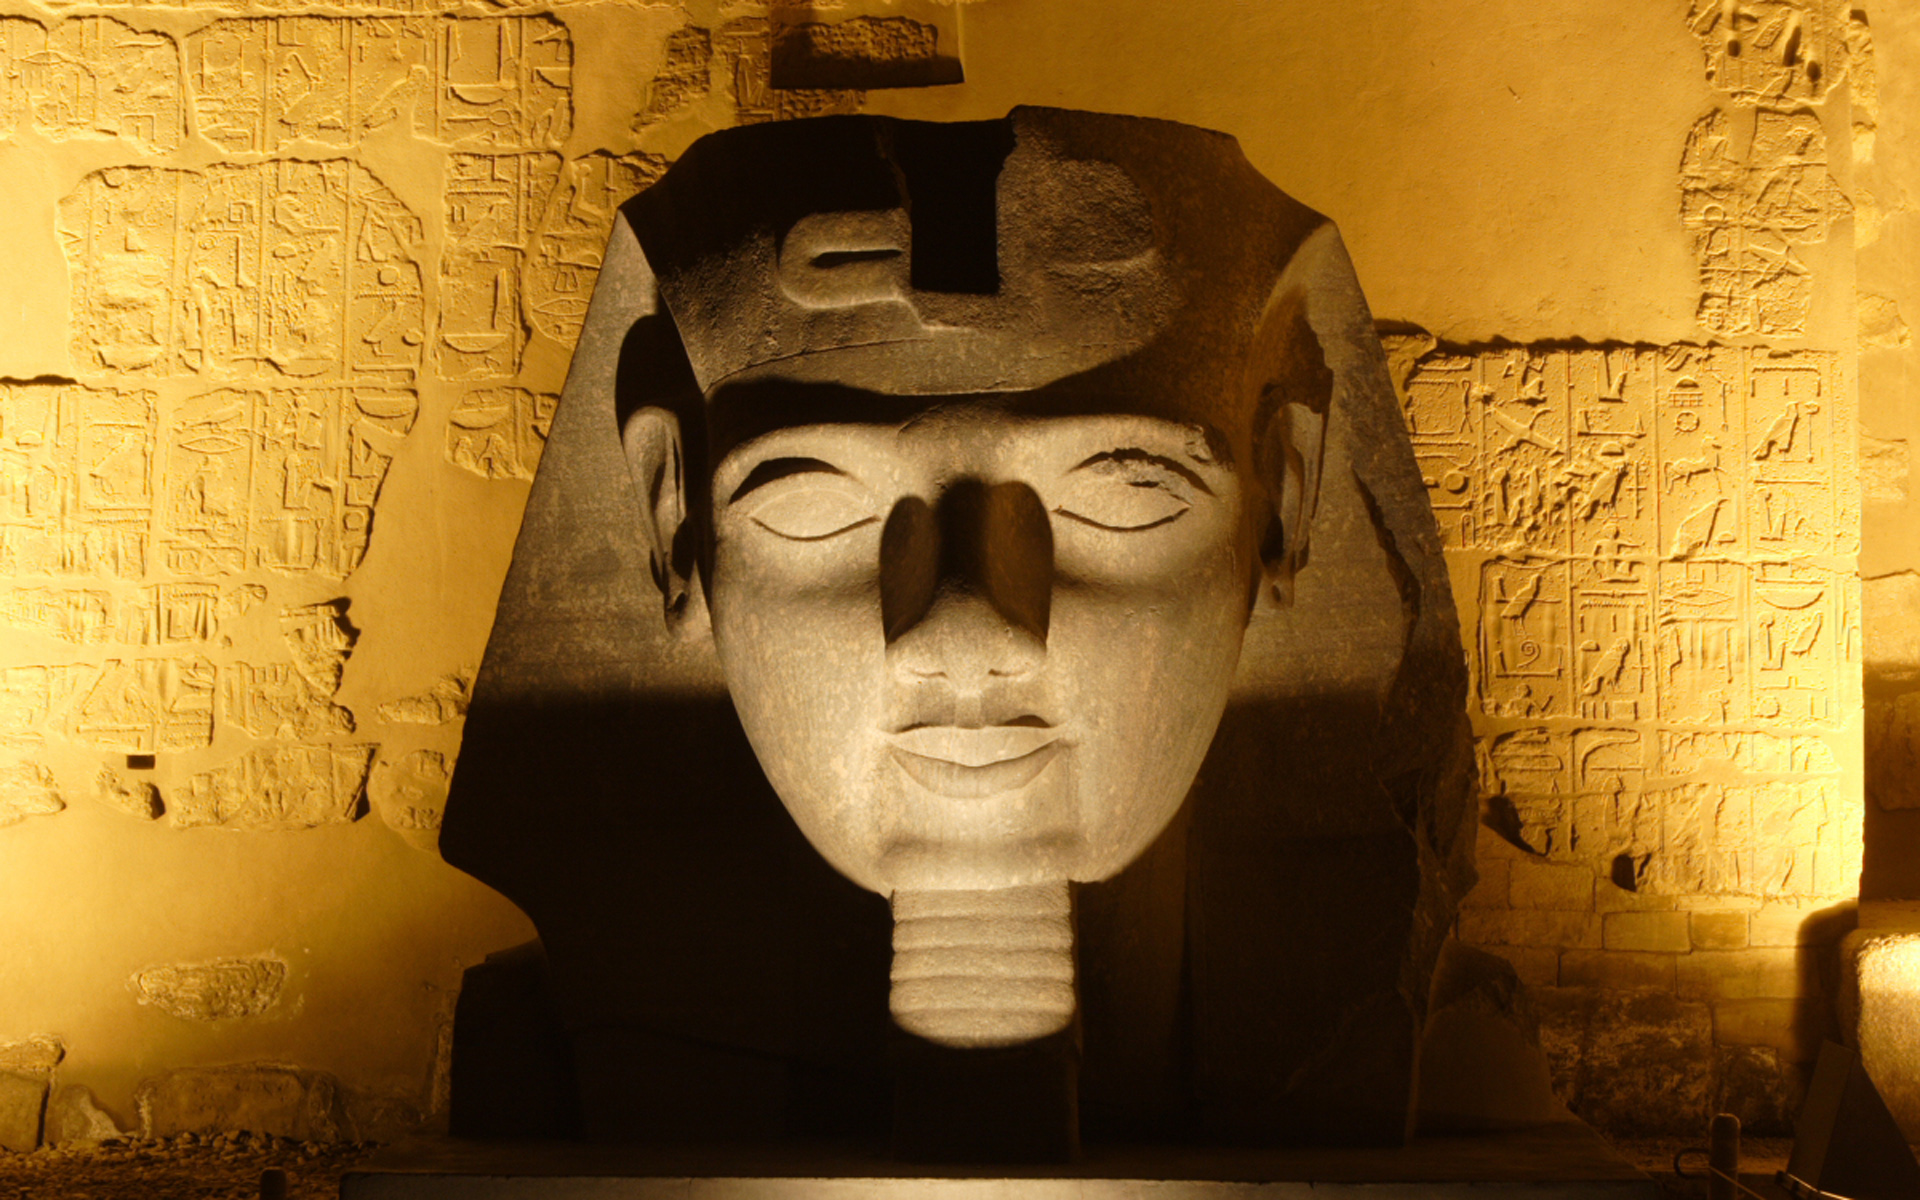 Egipt, rzeźba egipska, Ramzes II - fotografia, muzea, obiekty muzealne